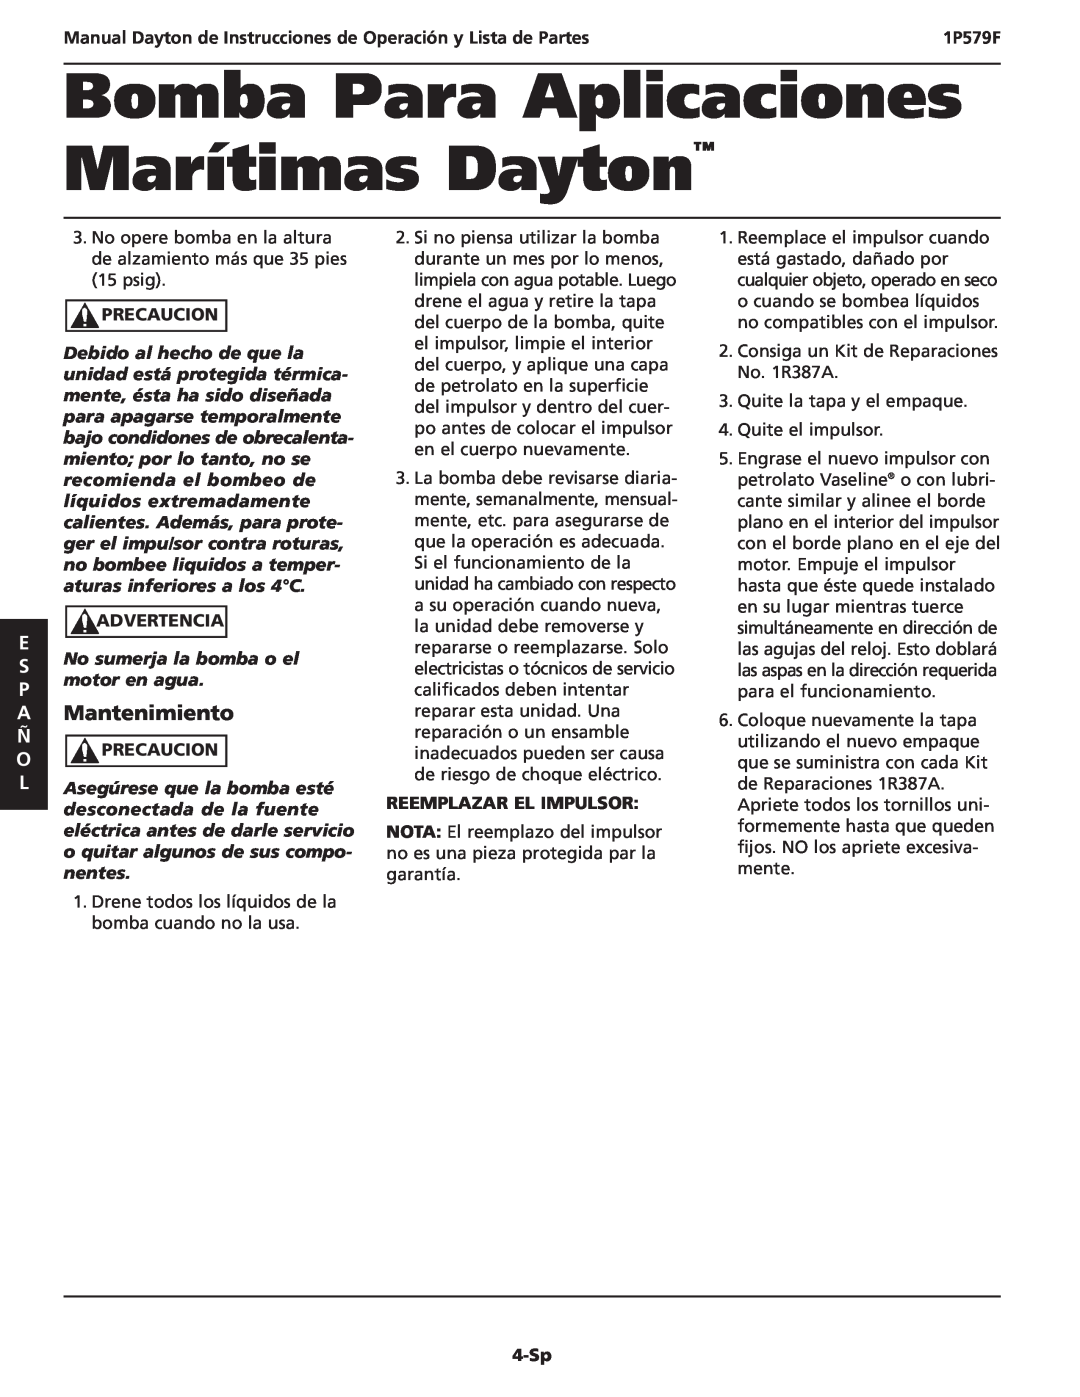 Dayton 1P579F A Mantenimiento, O Precaucion, Reemplazar El Impulsor, 4-Sp, Bomba Para Aplicaciones Marítimas Dayton 